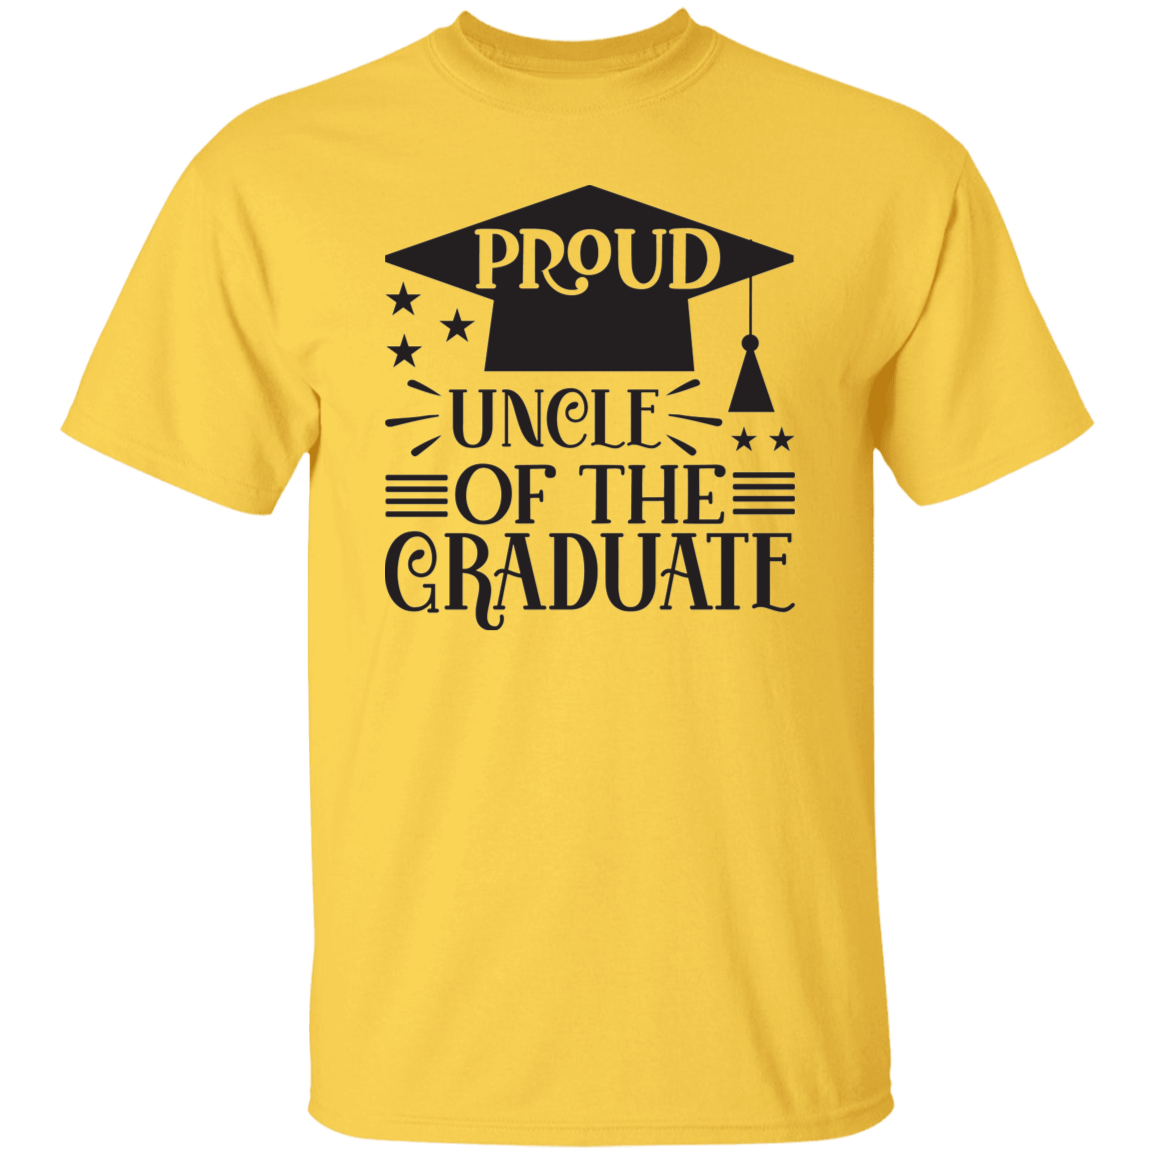 Proud Uncle of the Graduate G500 5.3 oz. T-Shirt